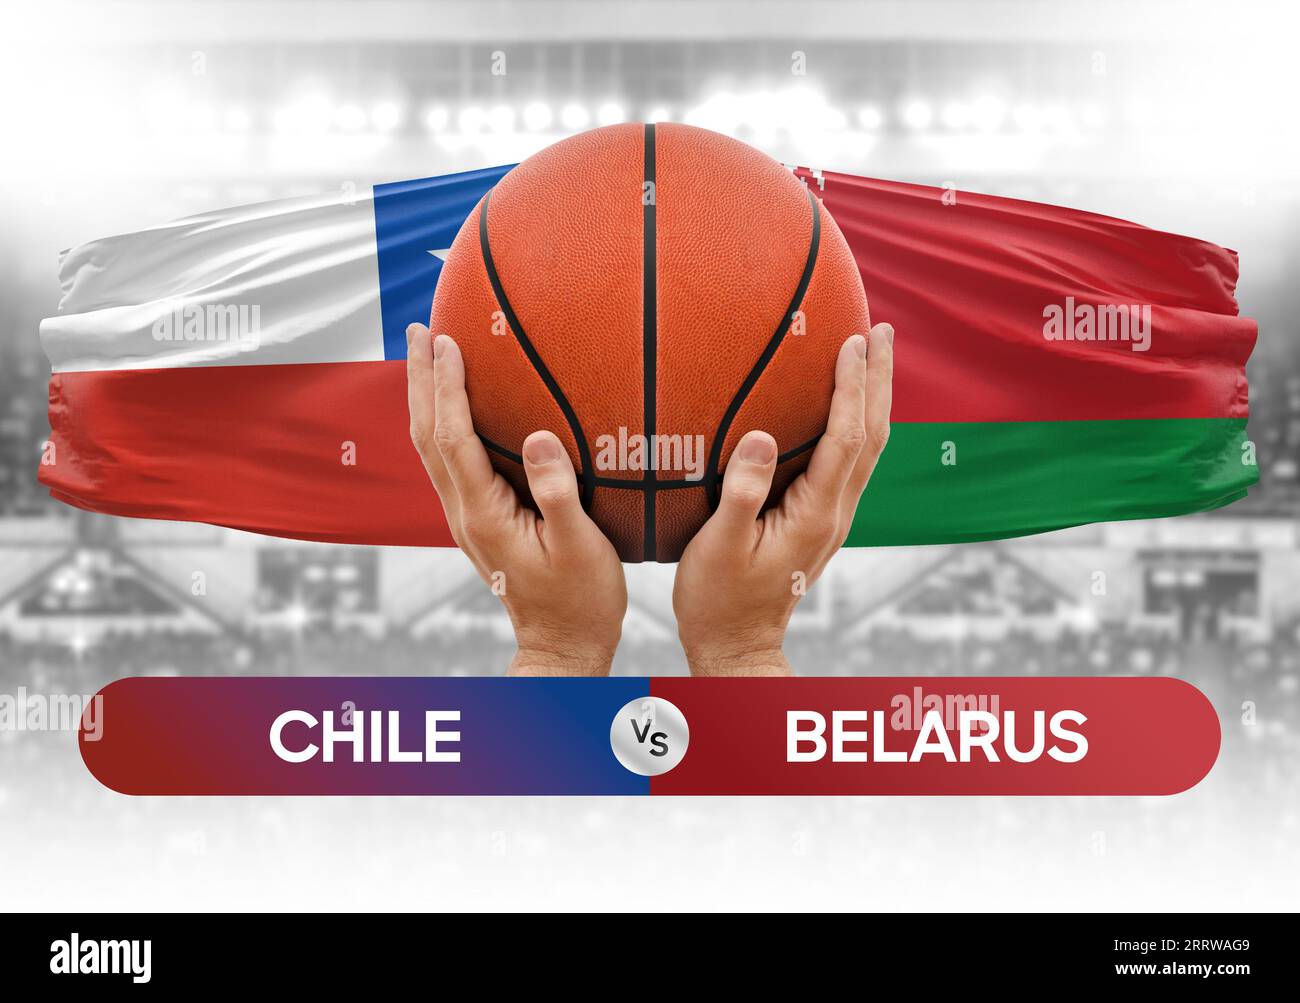 Chile vs Belarus nationale Basketballmannschaften Basketballspiel Wettbewerb Cup Konzept Bild Stockfoto